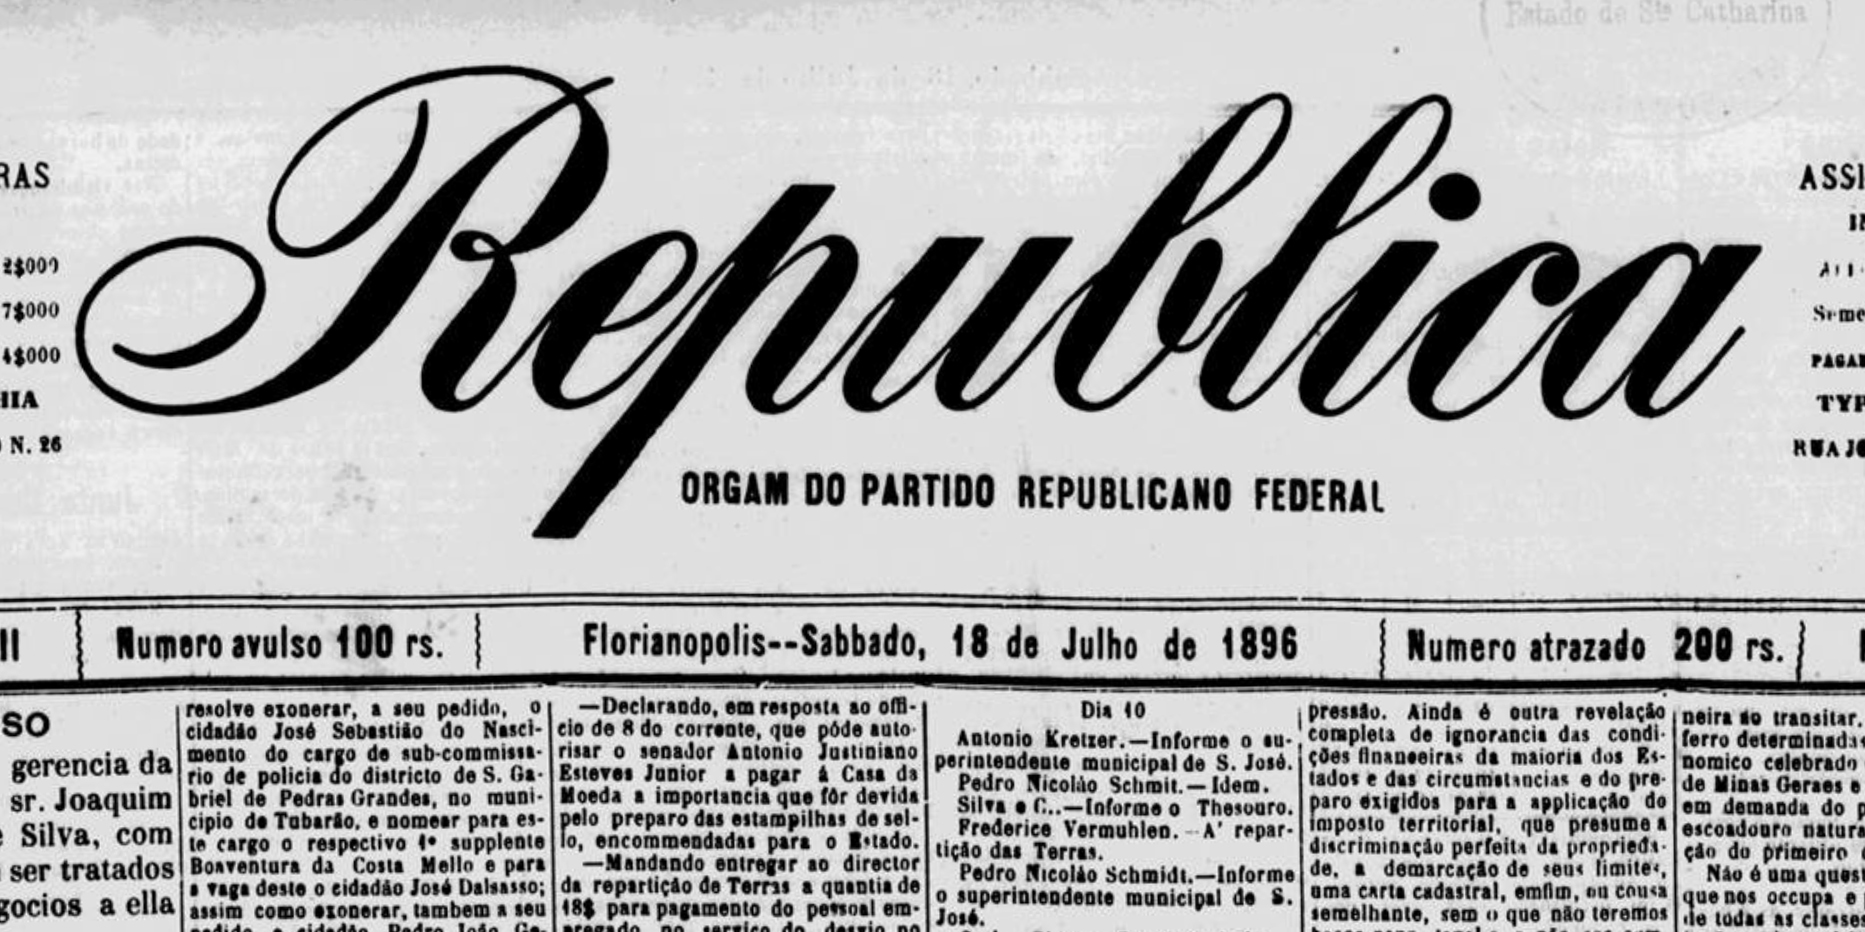 Notícia da exoneração a pedido de José Sebastião do Nascimento em 5 de julho de 1896, publicada no dia 18 do mesmo mês e ano no jornal "A Republica" (vide 2.a linha da 2.a coluna). Fonte: Hemeroteca Digital Brasileira.